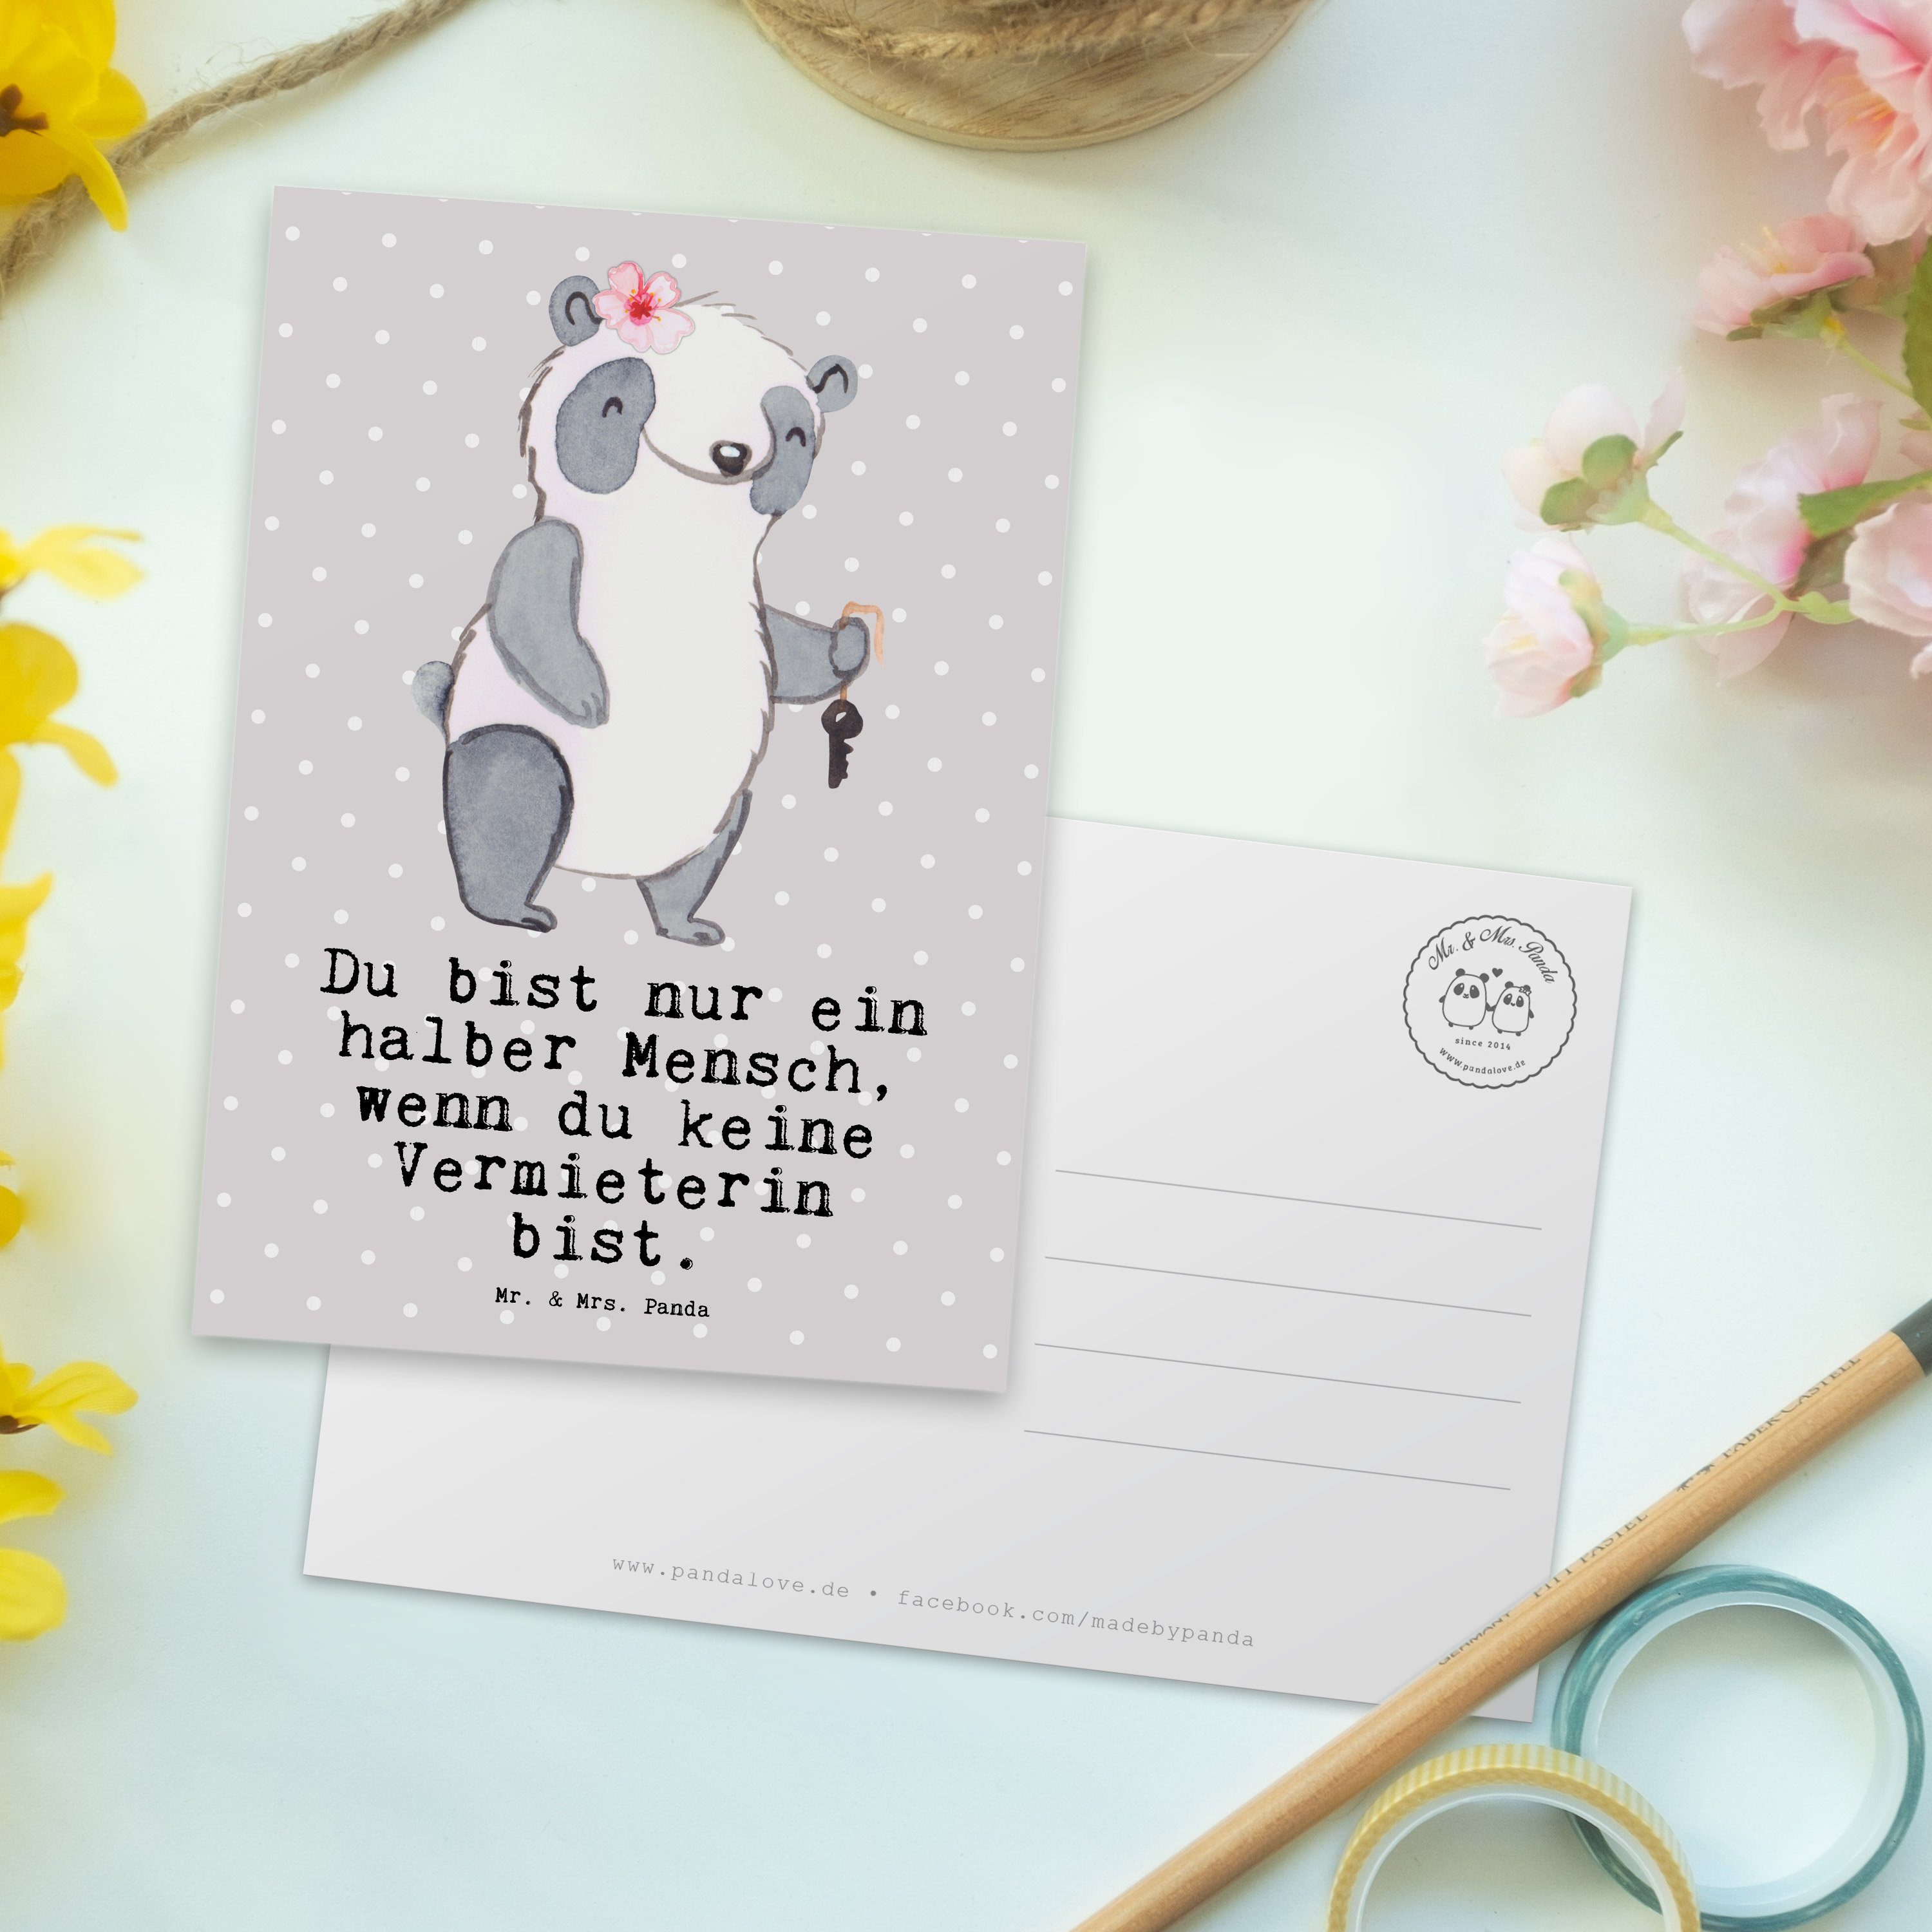 Pastell - Mr. Mrs. - Grau Geschenk, Grußka mit Vermieterin Herz & Panda Ansichtskarte, Postkarte